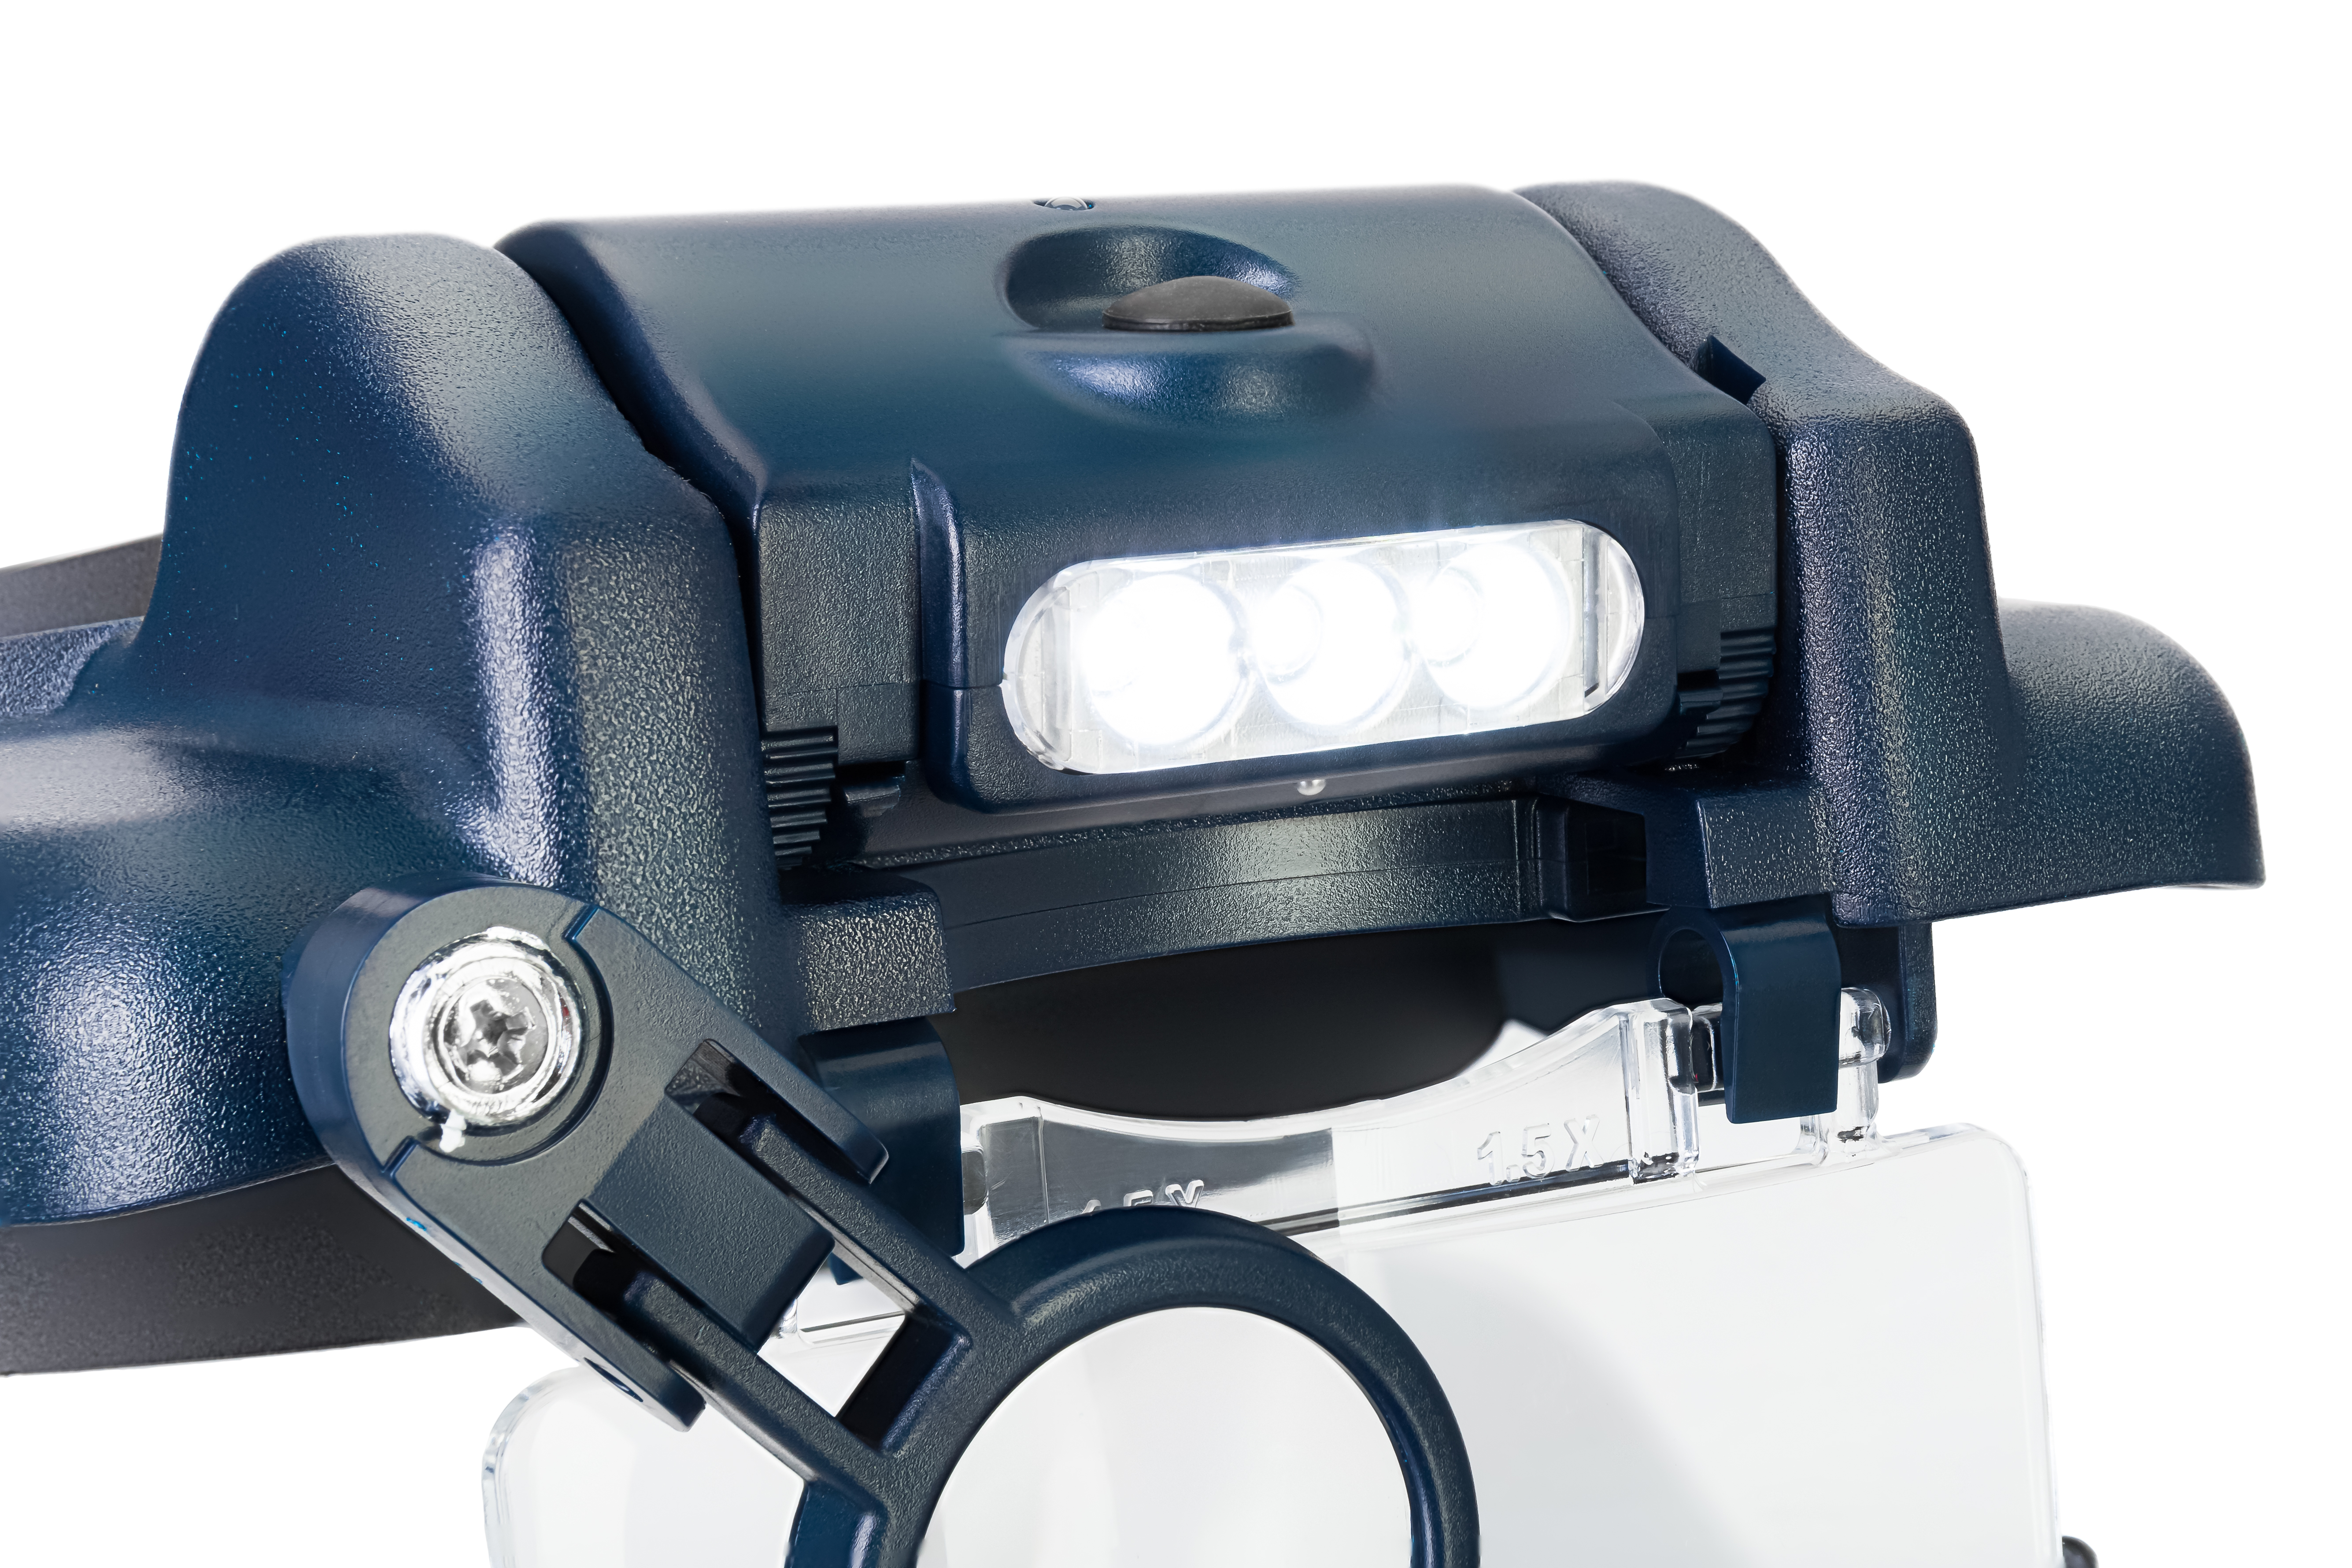 Náhlavná lupa Discovery Crafts DHR 10 s LED osvetlením je ideálna pre všetkých užívate¾ov, ktorí vyžadujú maximálnu flexibilitu a presnos� práce.